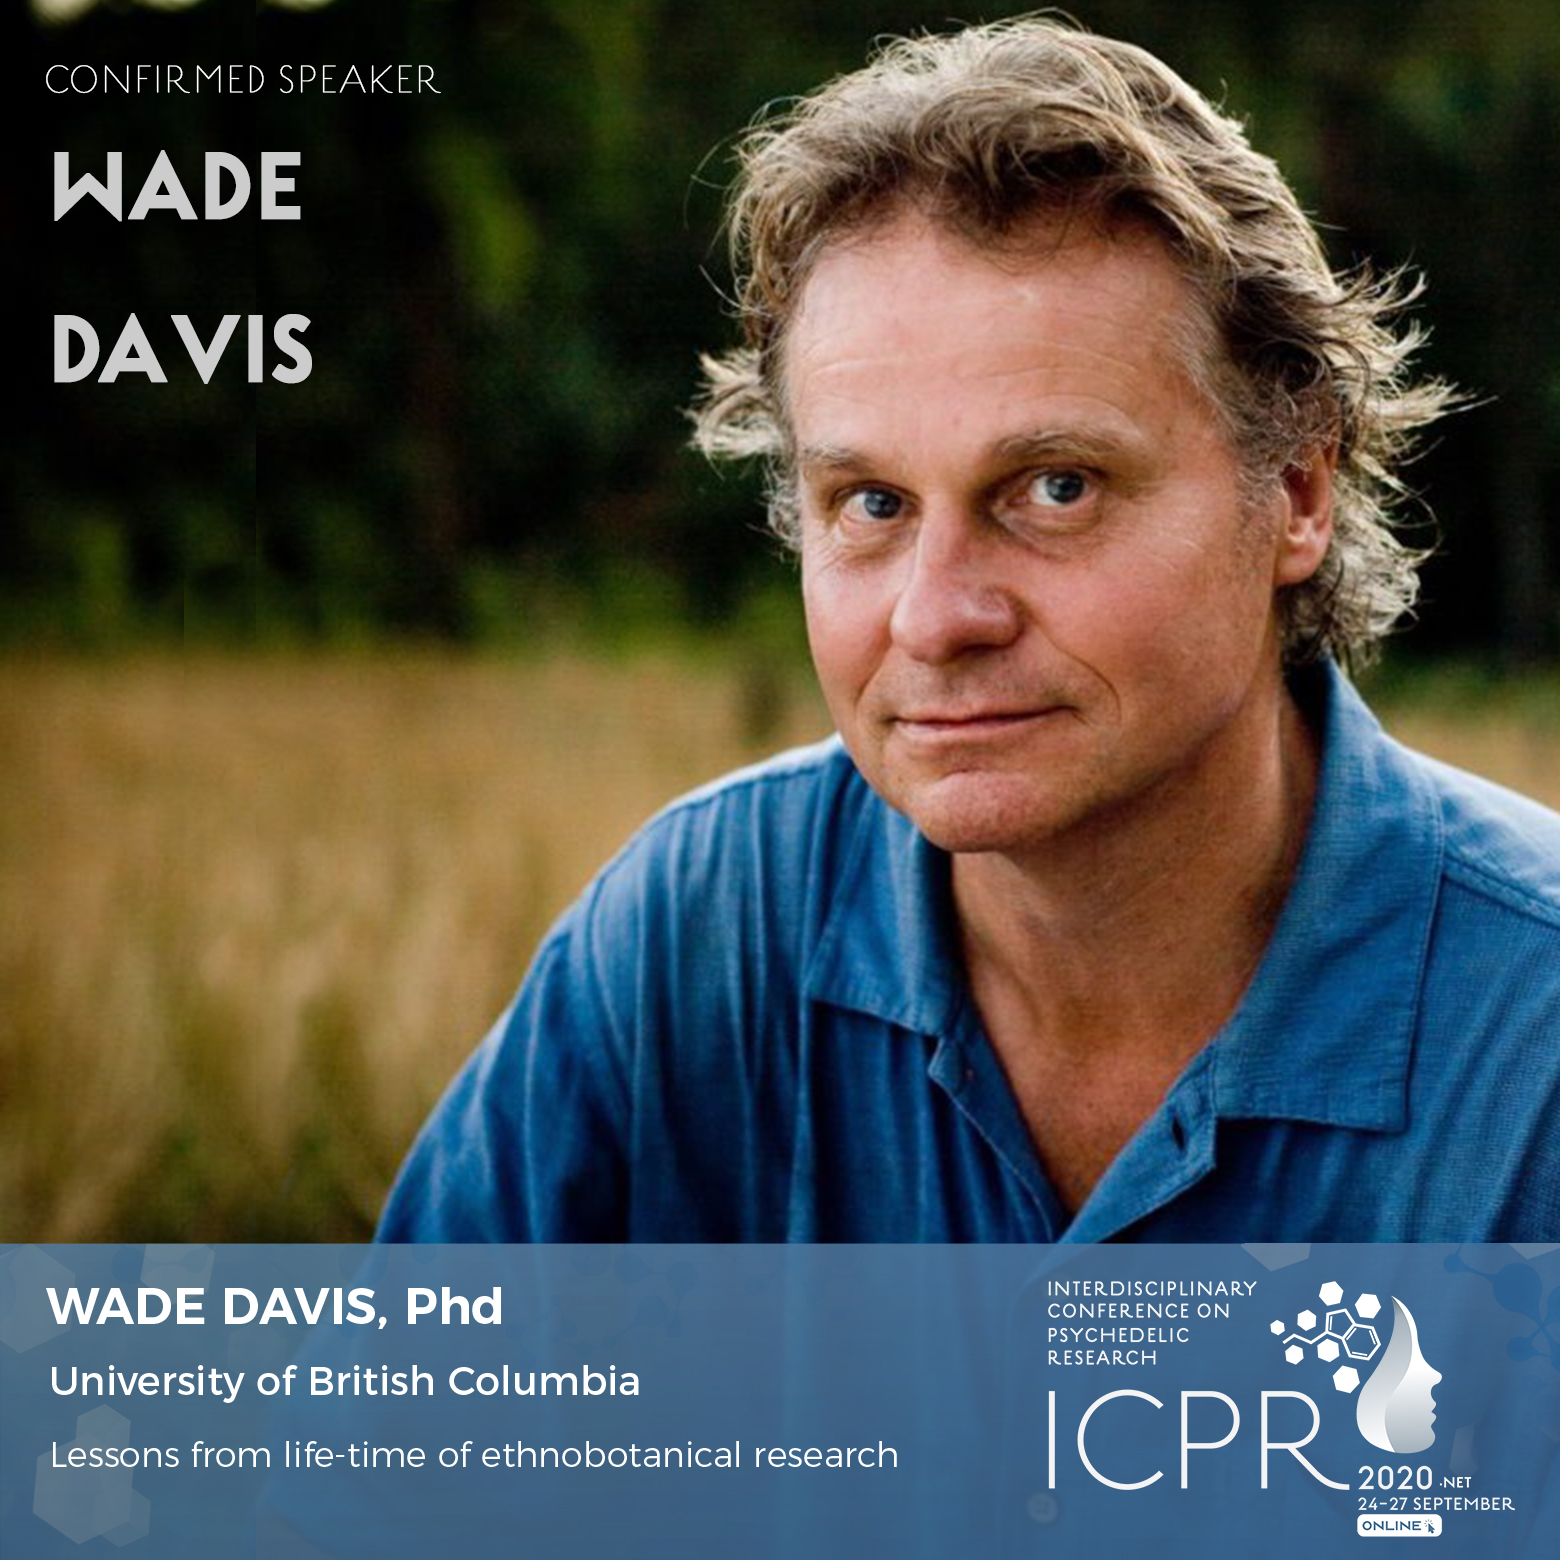 Meet ICPR 2020 Keynote Speaker, Wade Davis